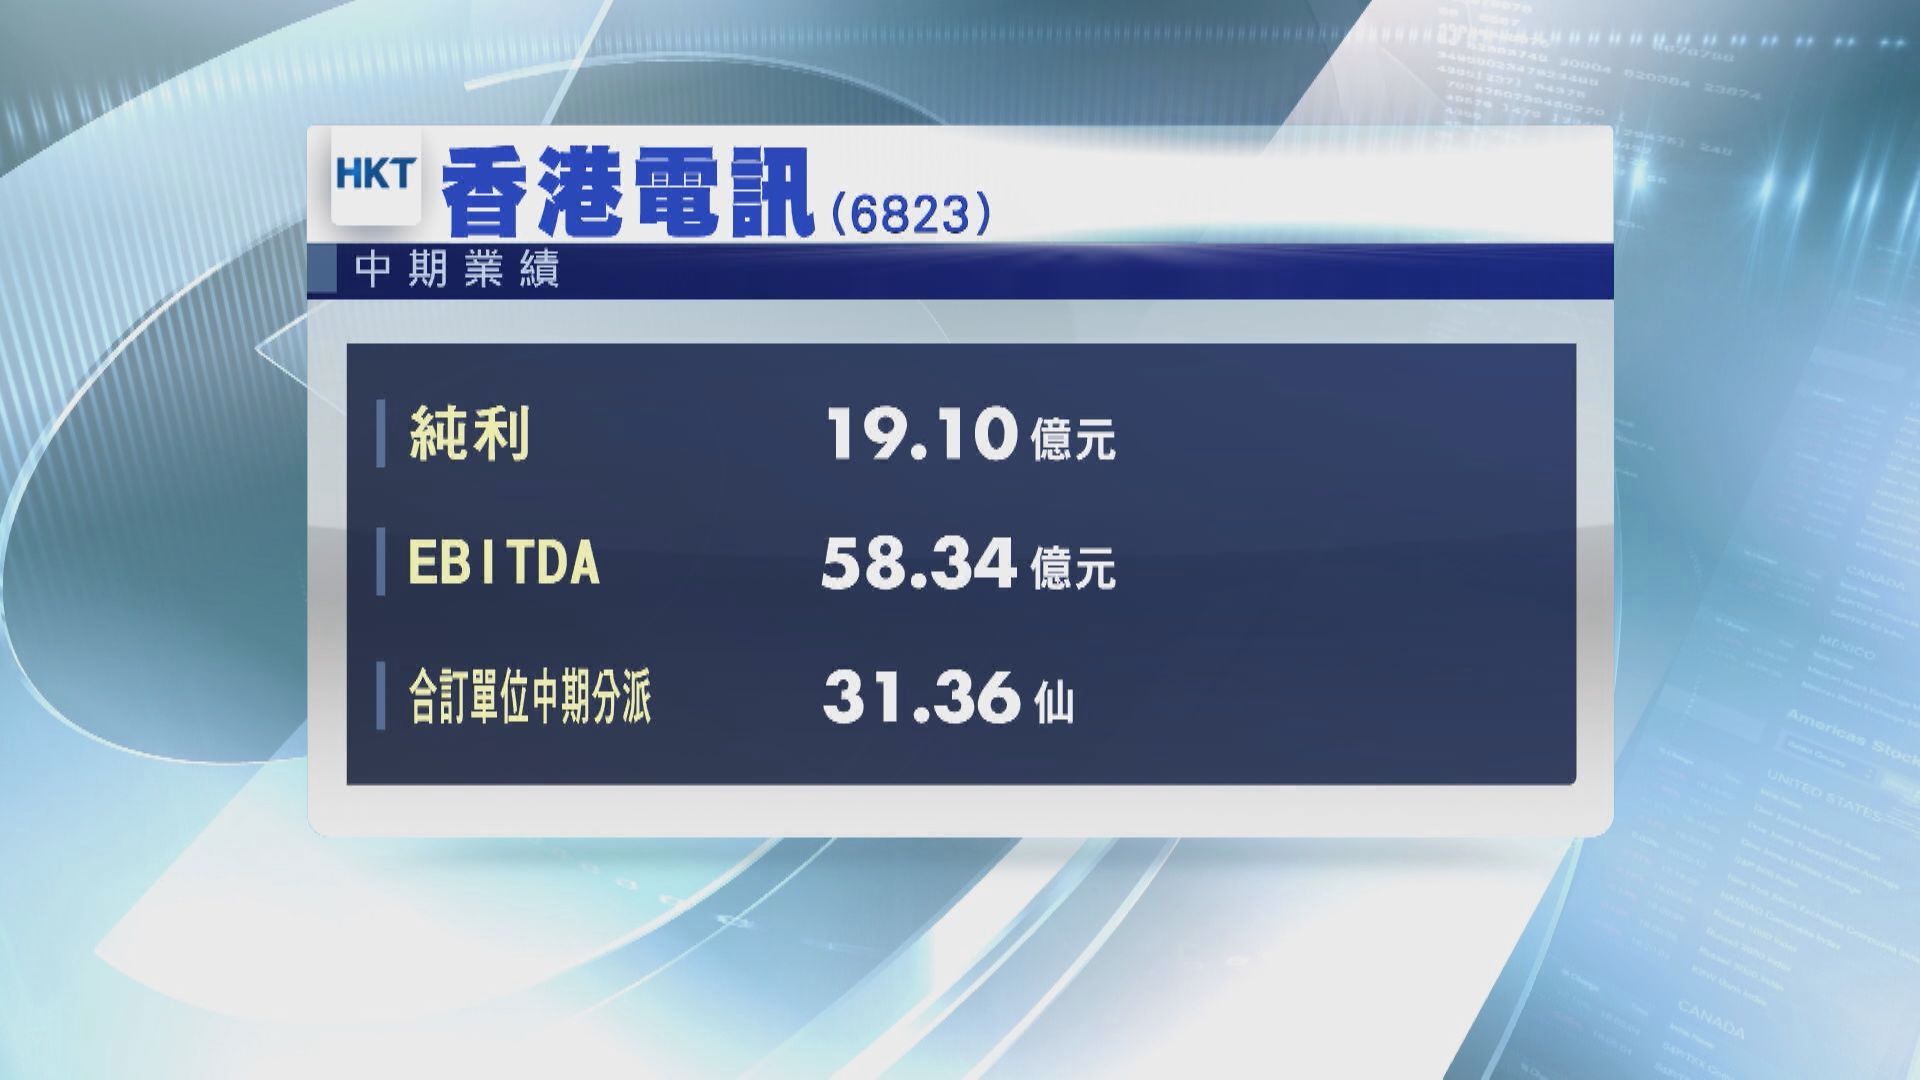 【業績速報】香港電訊上半年賺19.1億 經調整資金流增2%